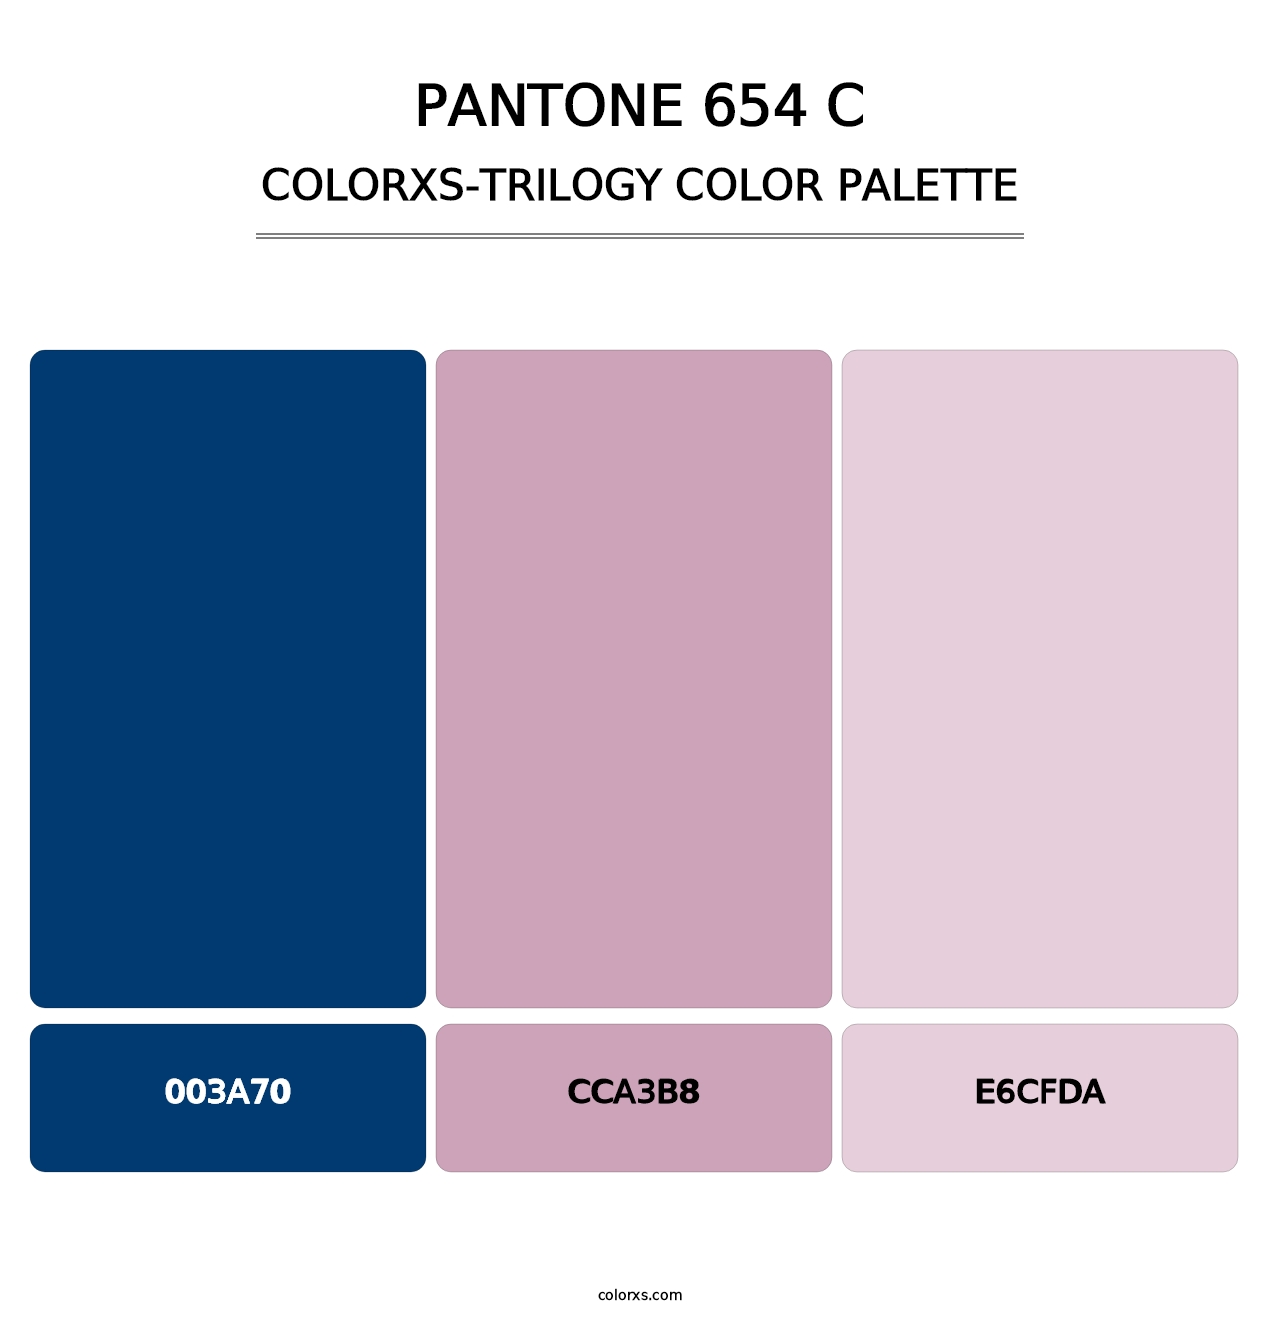 PANTONE 654 C - Colorxs Trilogy Palette